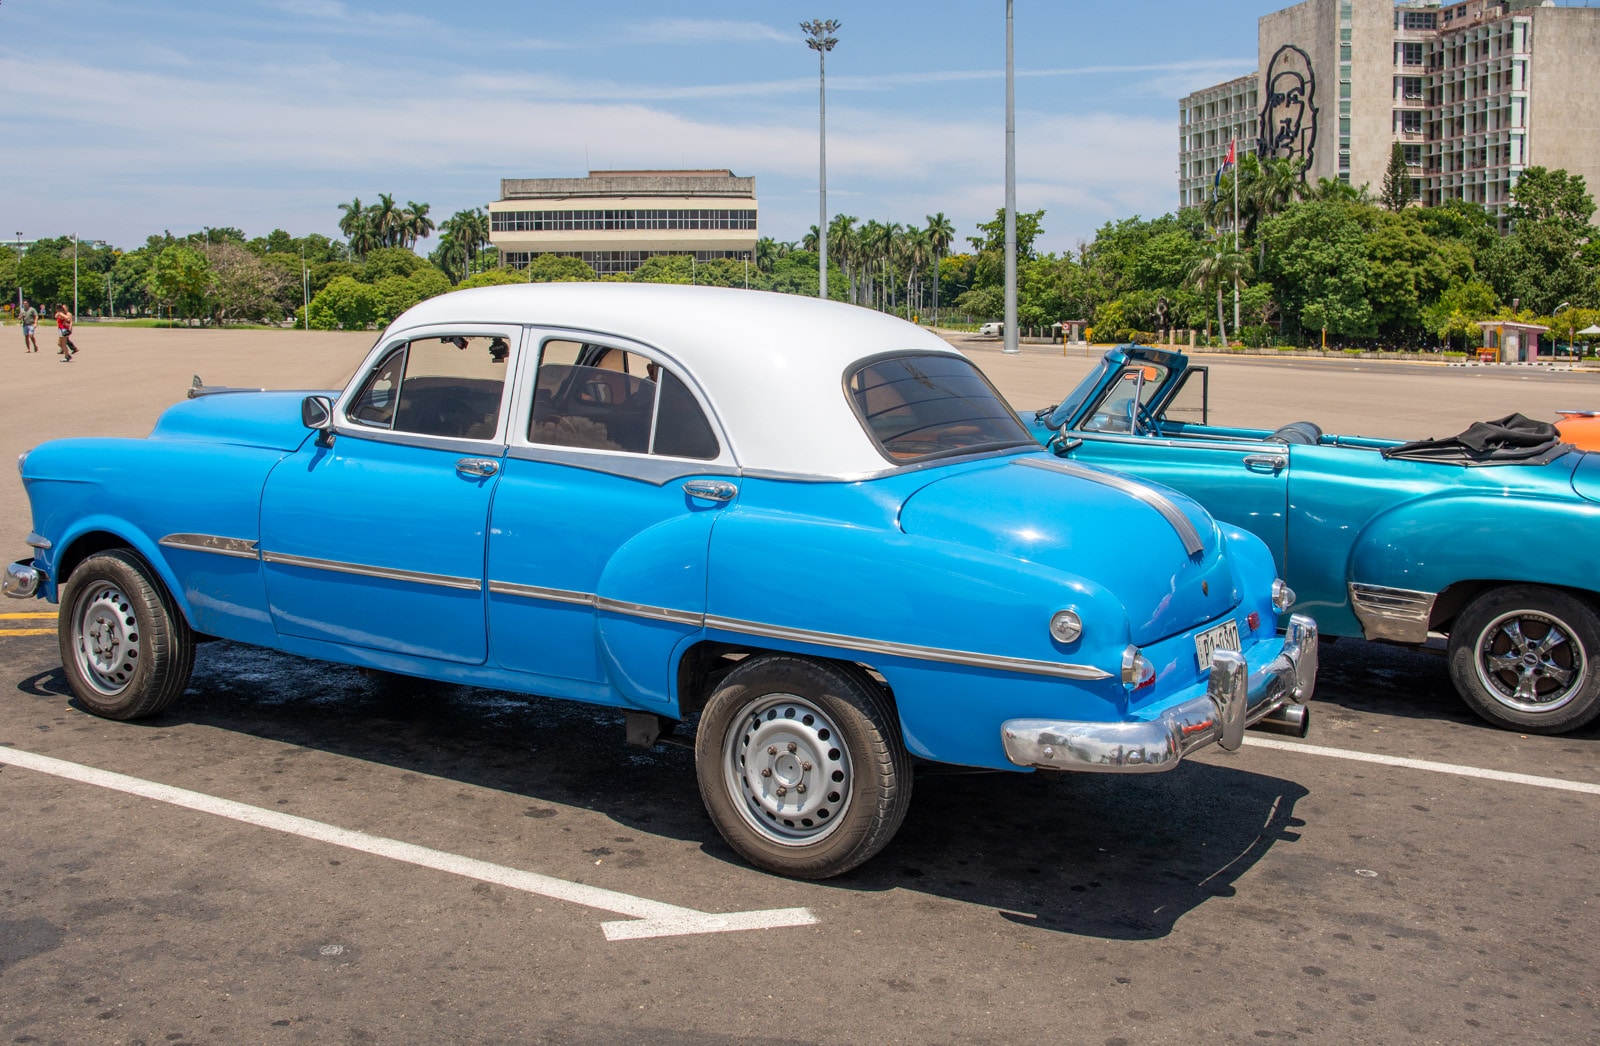 Hawana - stare samochody